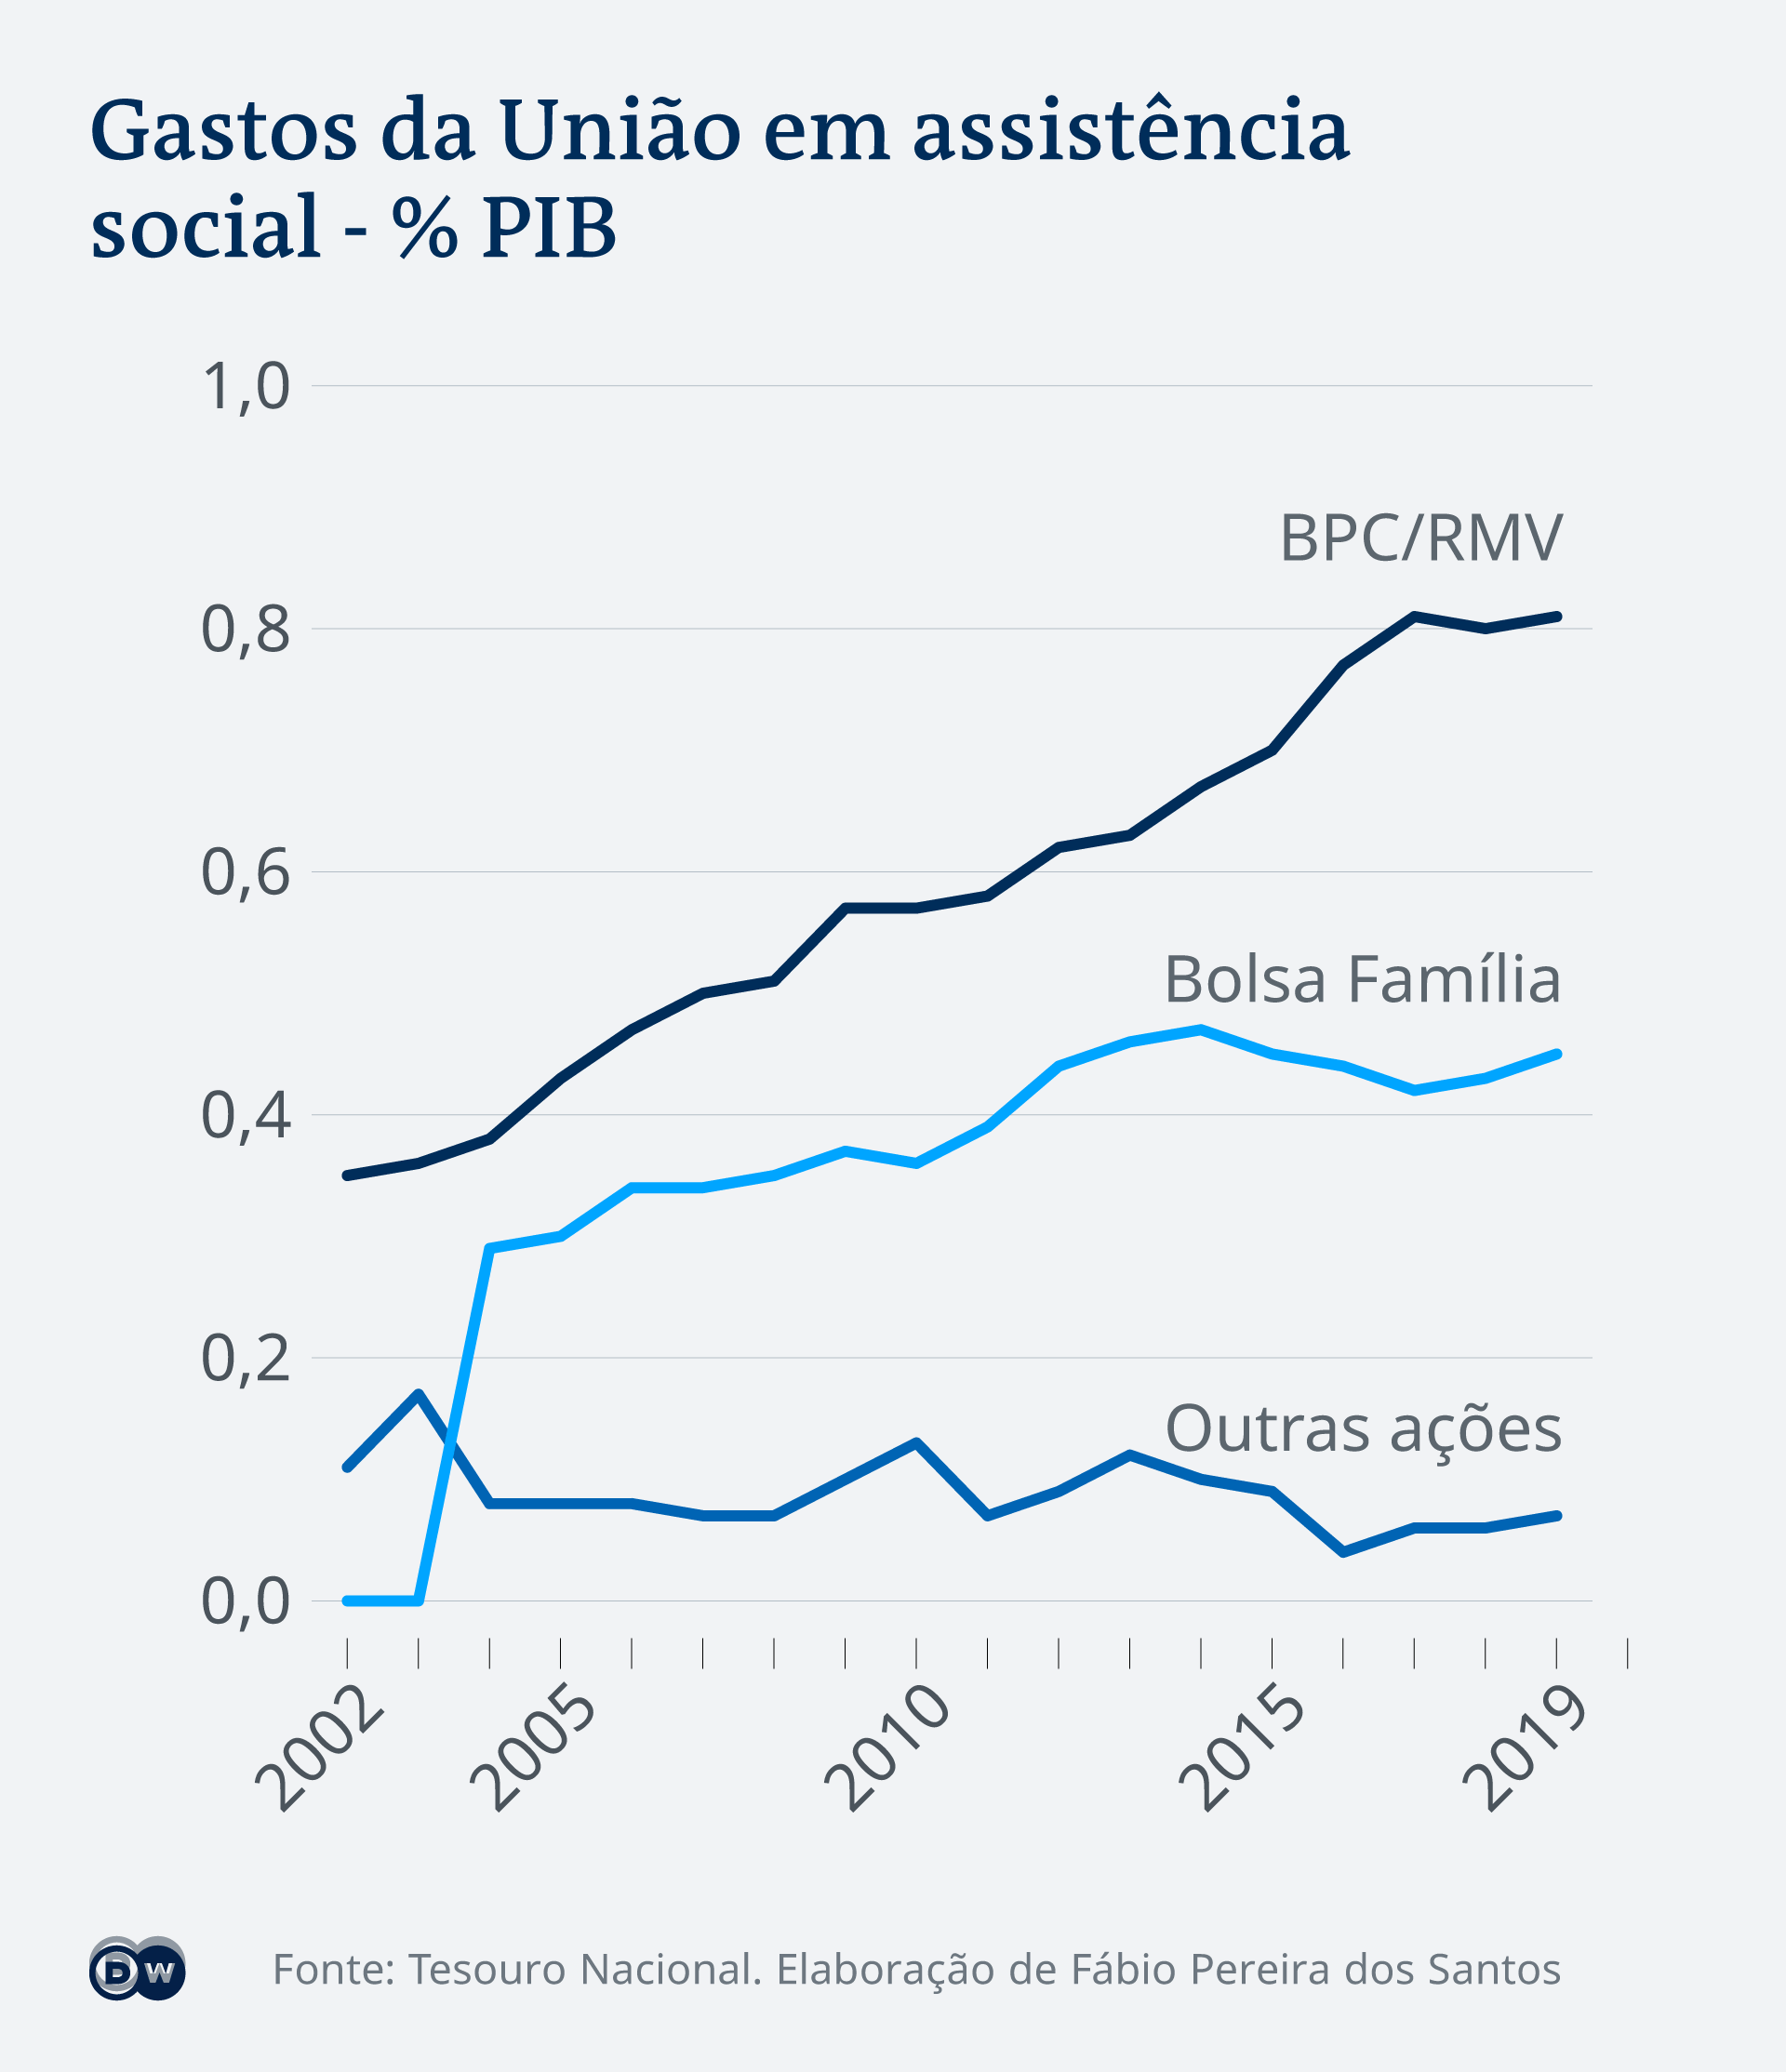 Infográfico mostra os gastos da União em assistência social ao longo dos anos